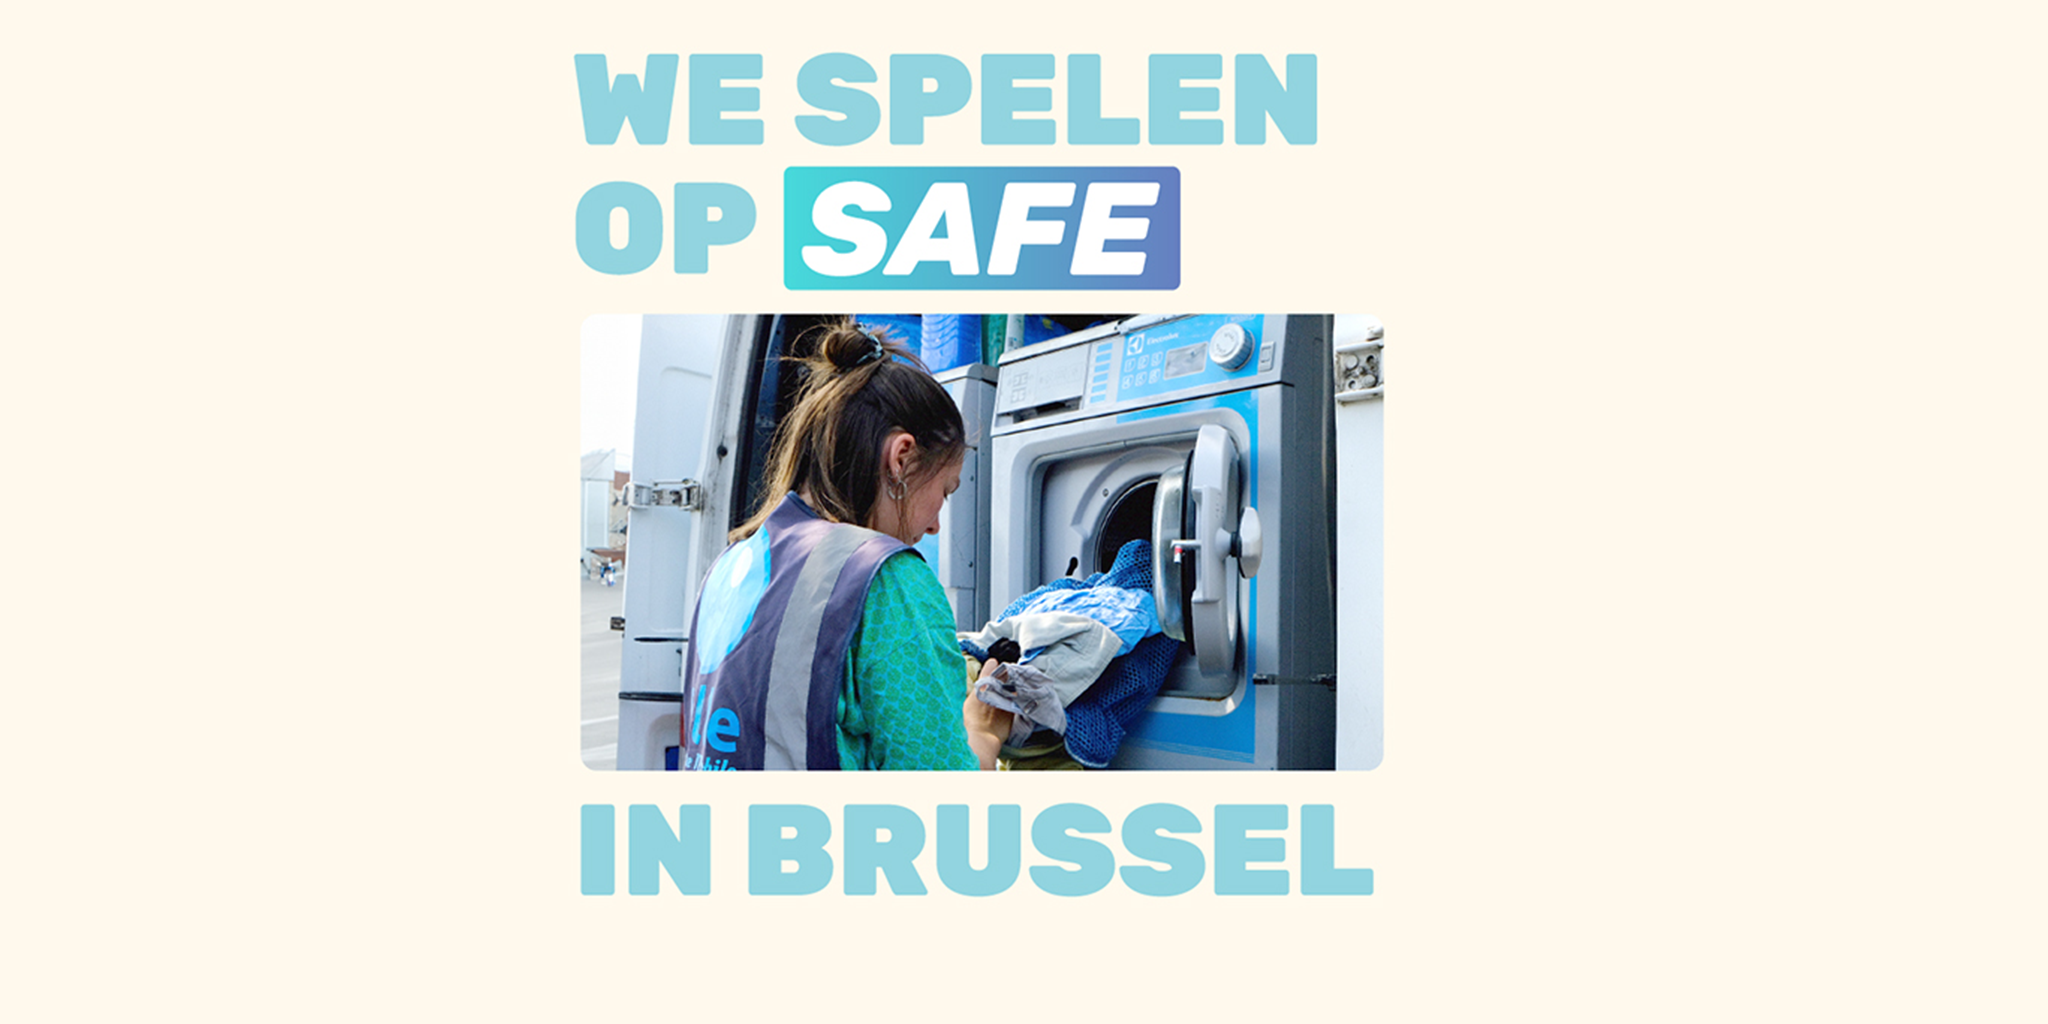 We spelen op safe in Brussel: nieuwe campagne voor safe.brussels